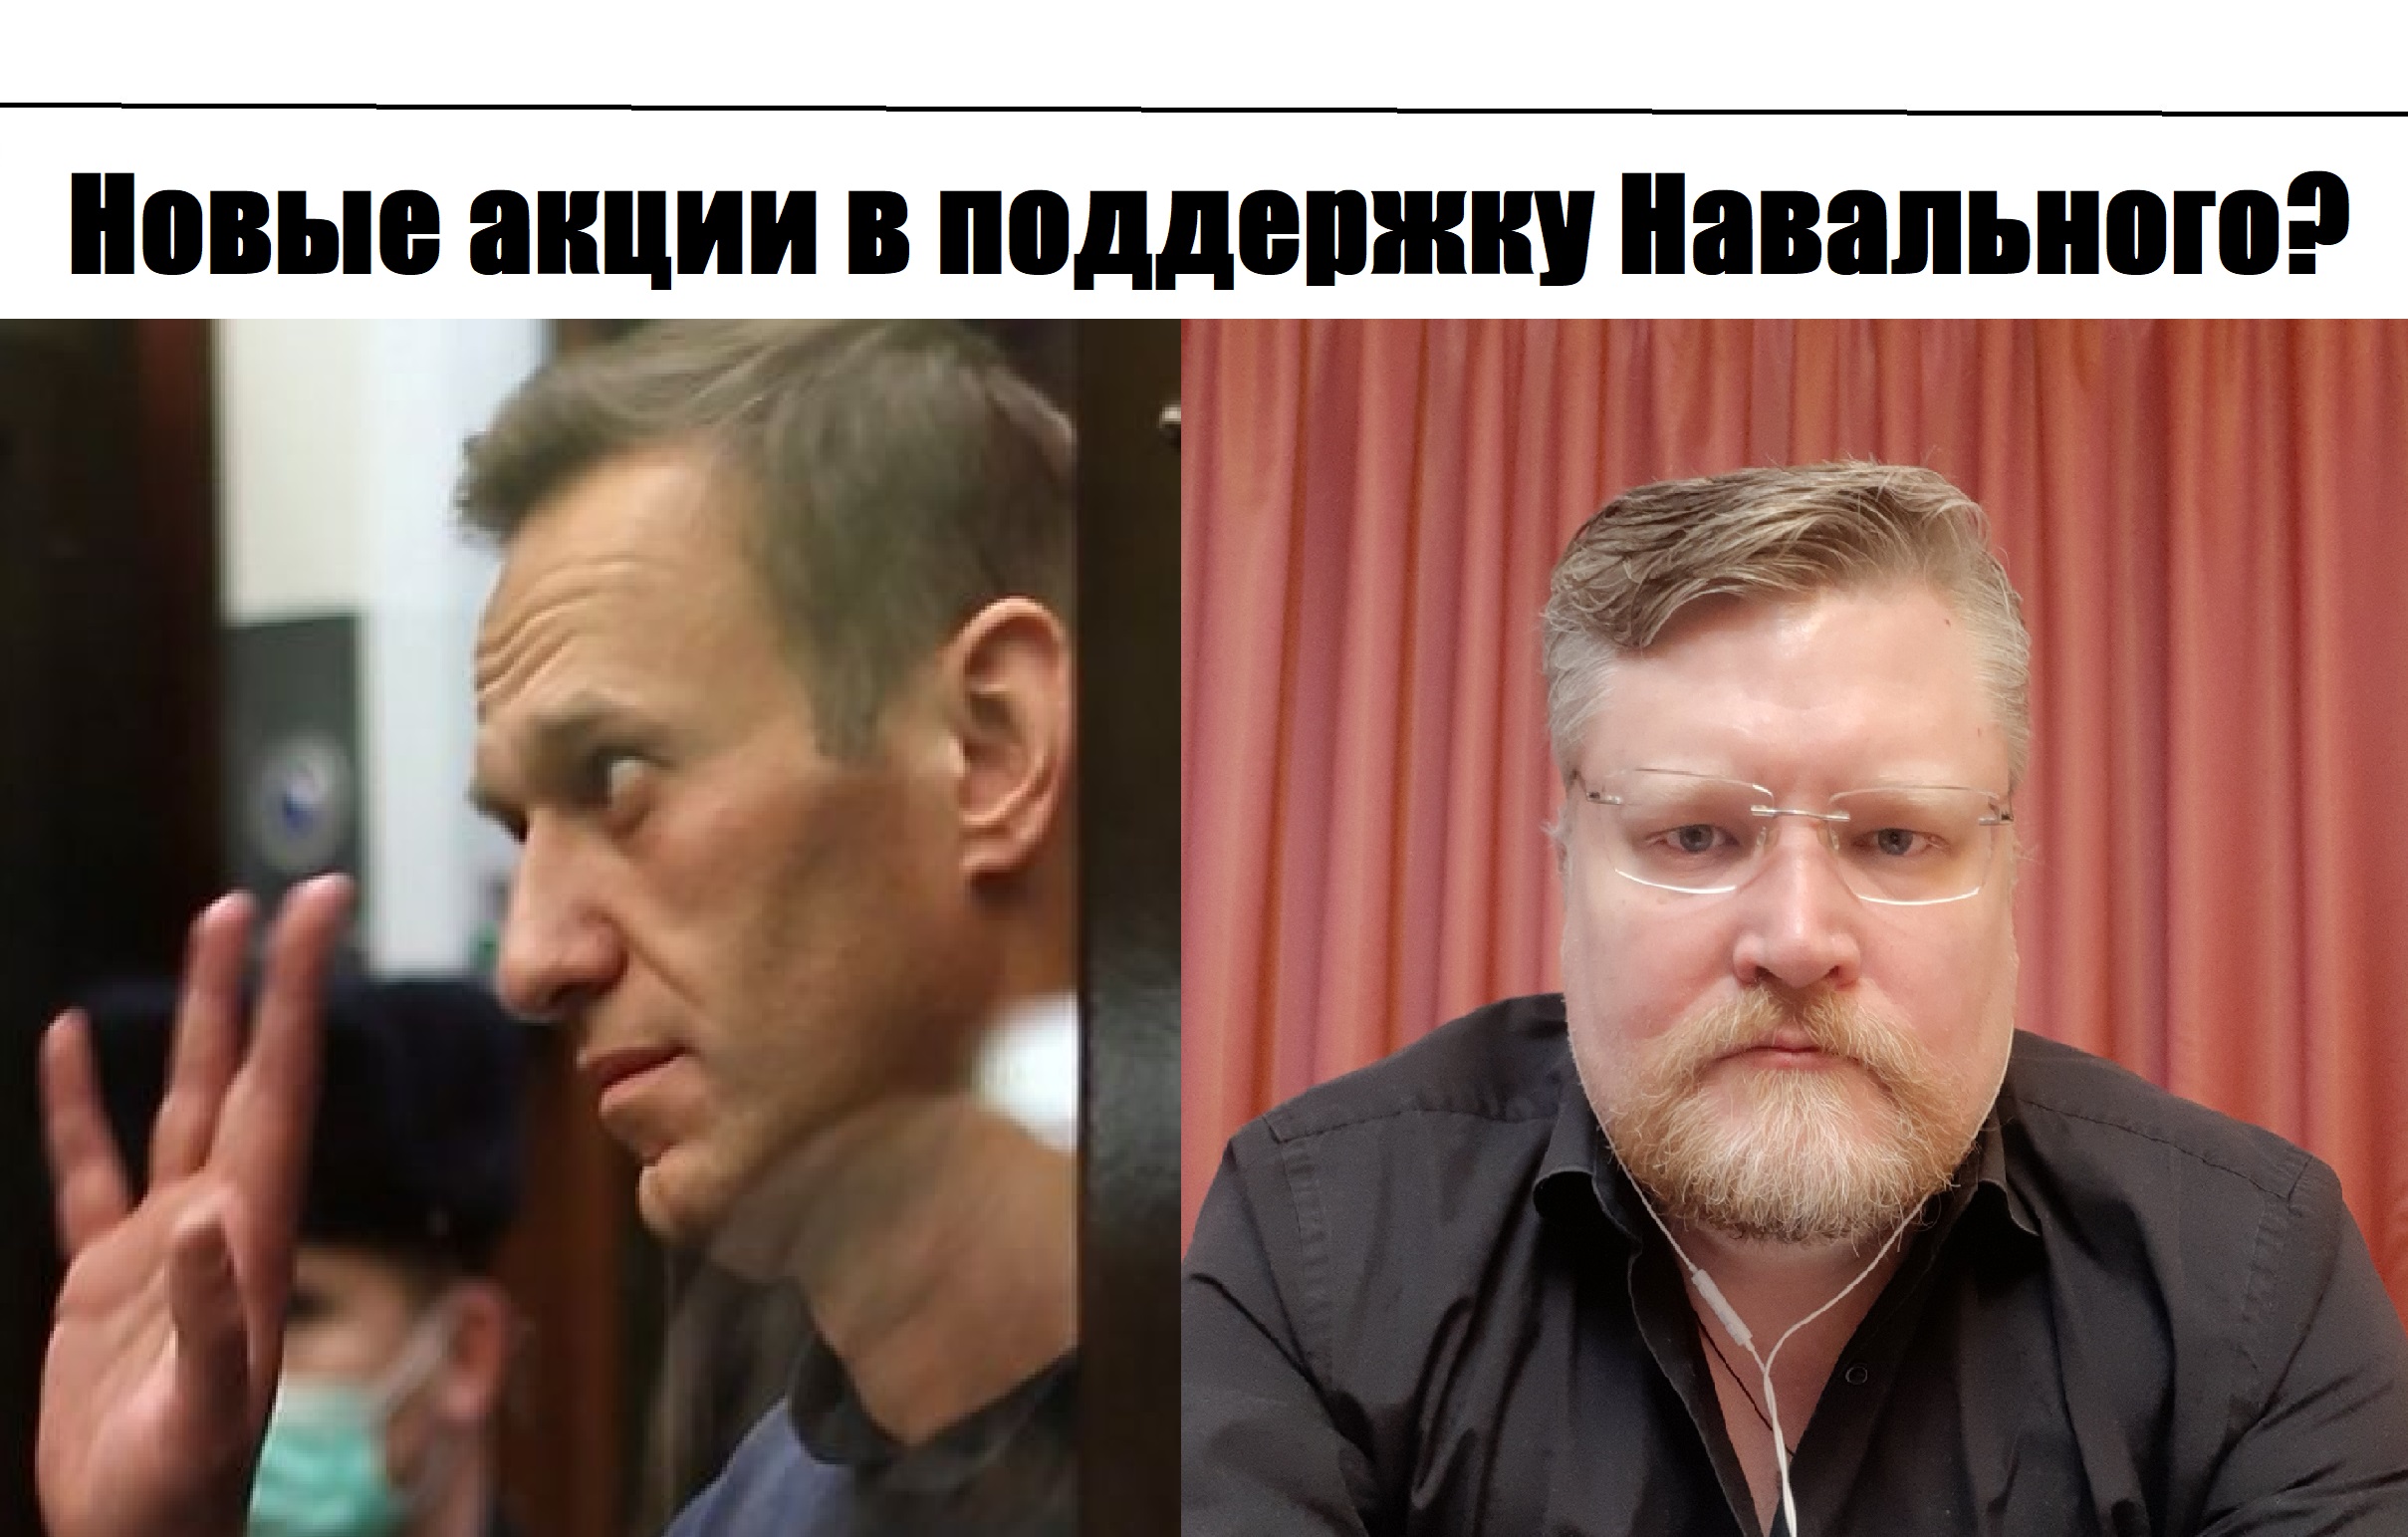 14 февраля в поддержку НАвального акции